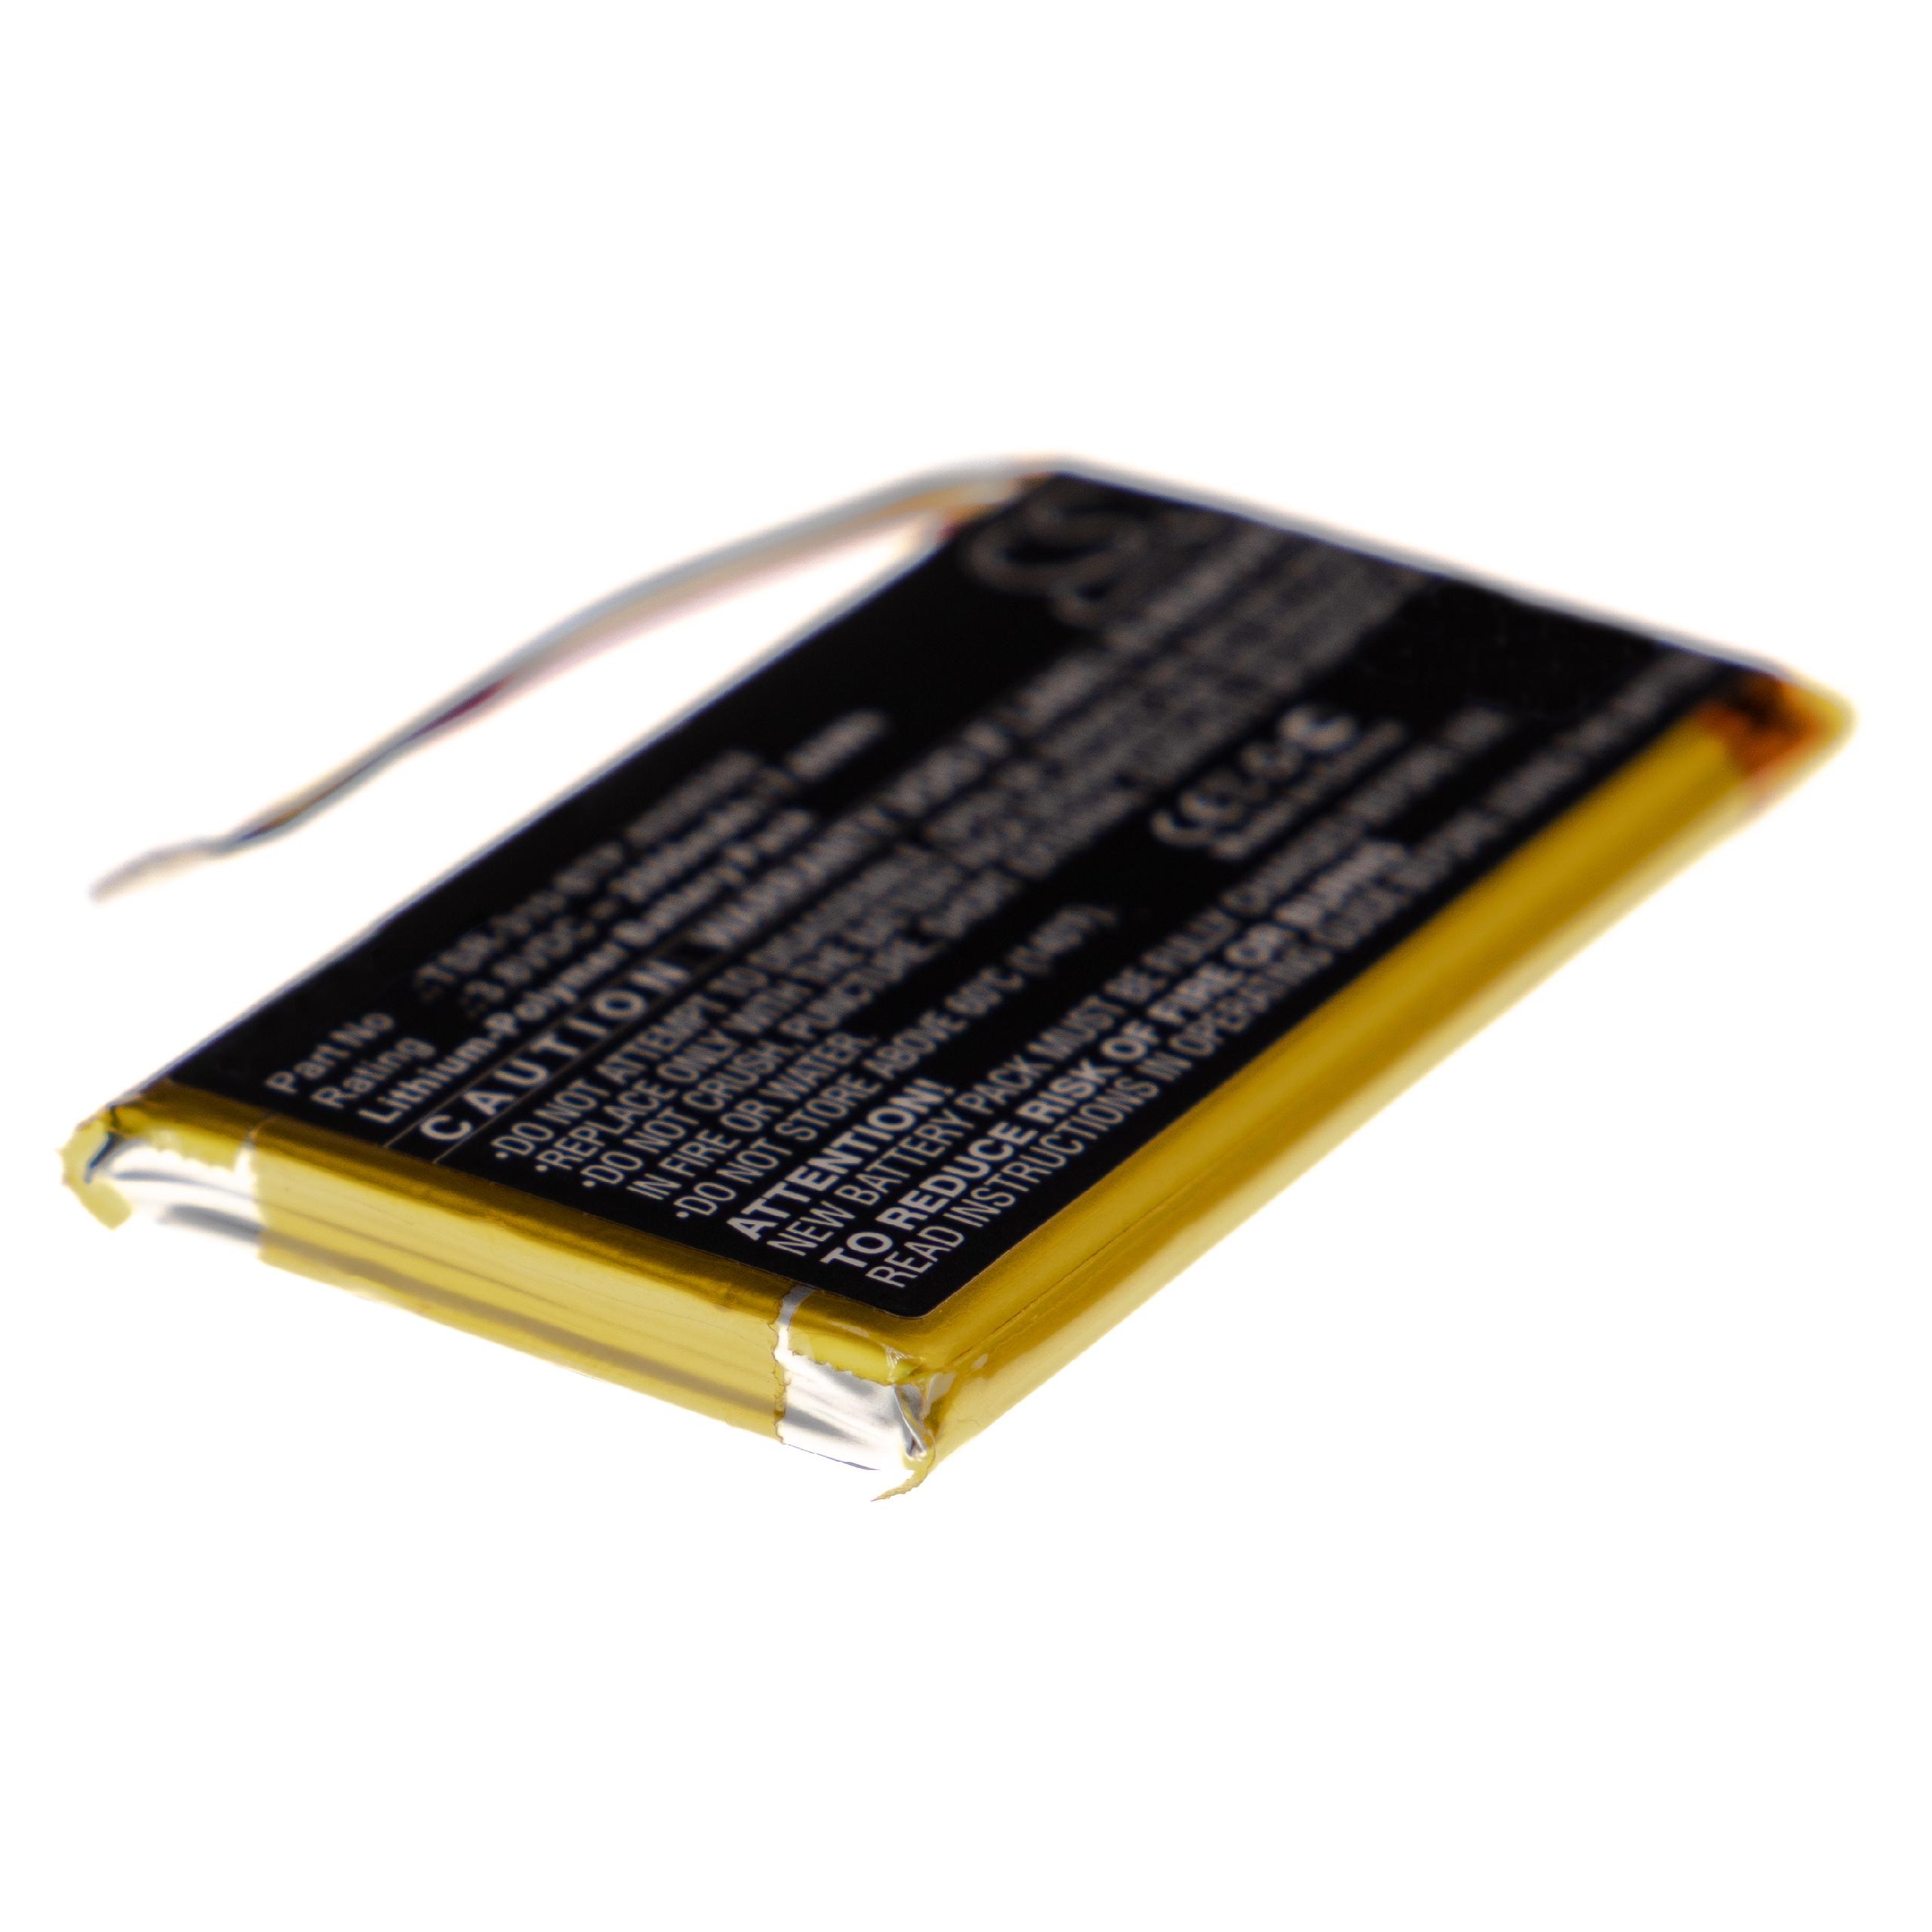 Batterie remplace Crestron 6508588, TSR-310-BTP pour ordinateur de poche - 2000mAh 3,8V Li-polymère